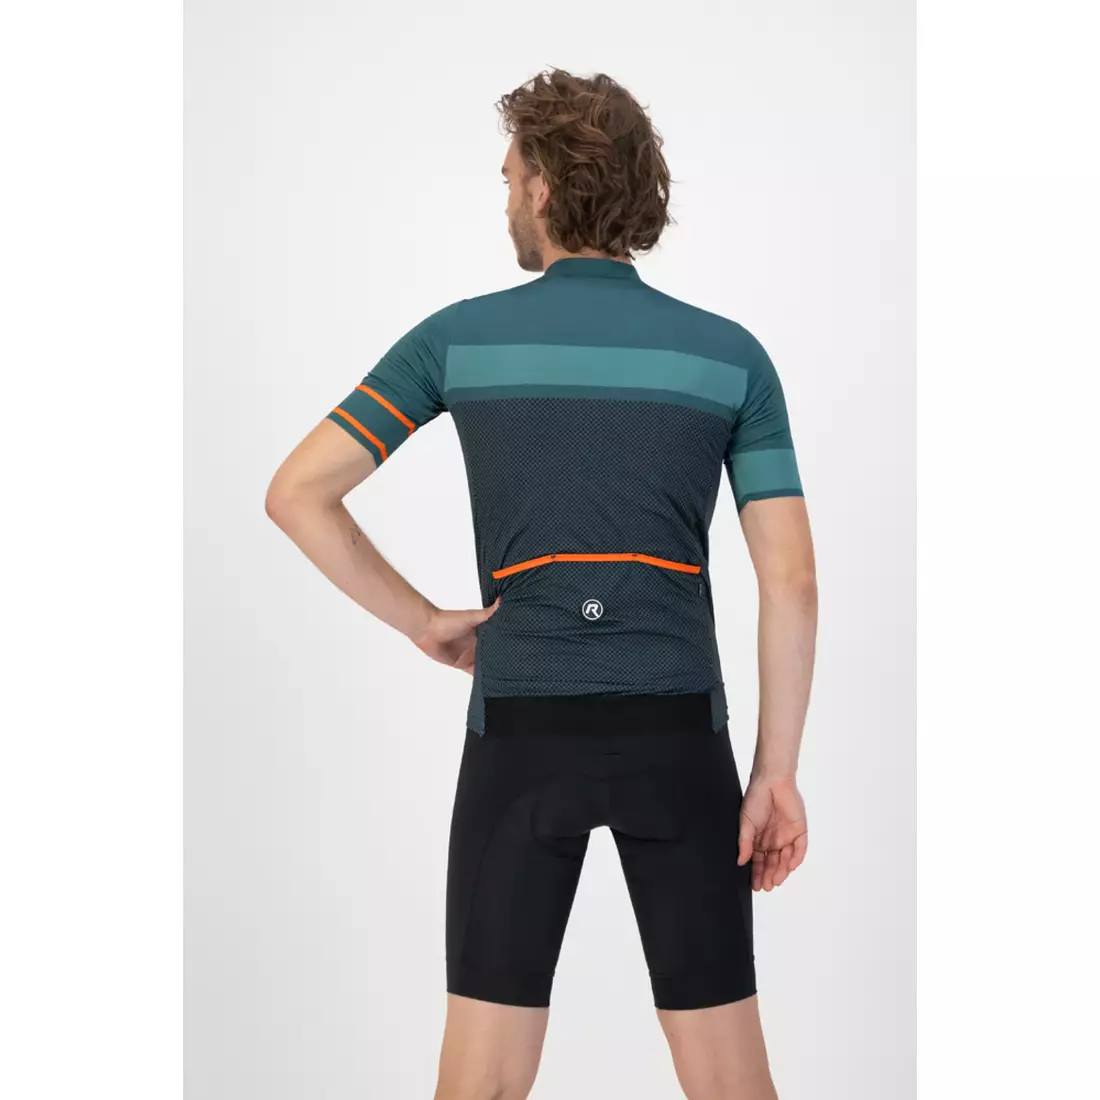 Rogelli BLOCK tricou de ciclism masculin, verde-portocaliu